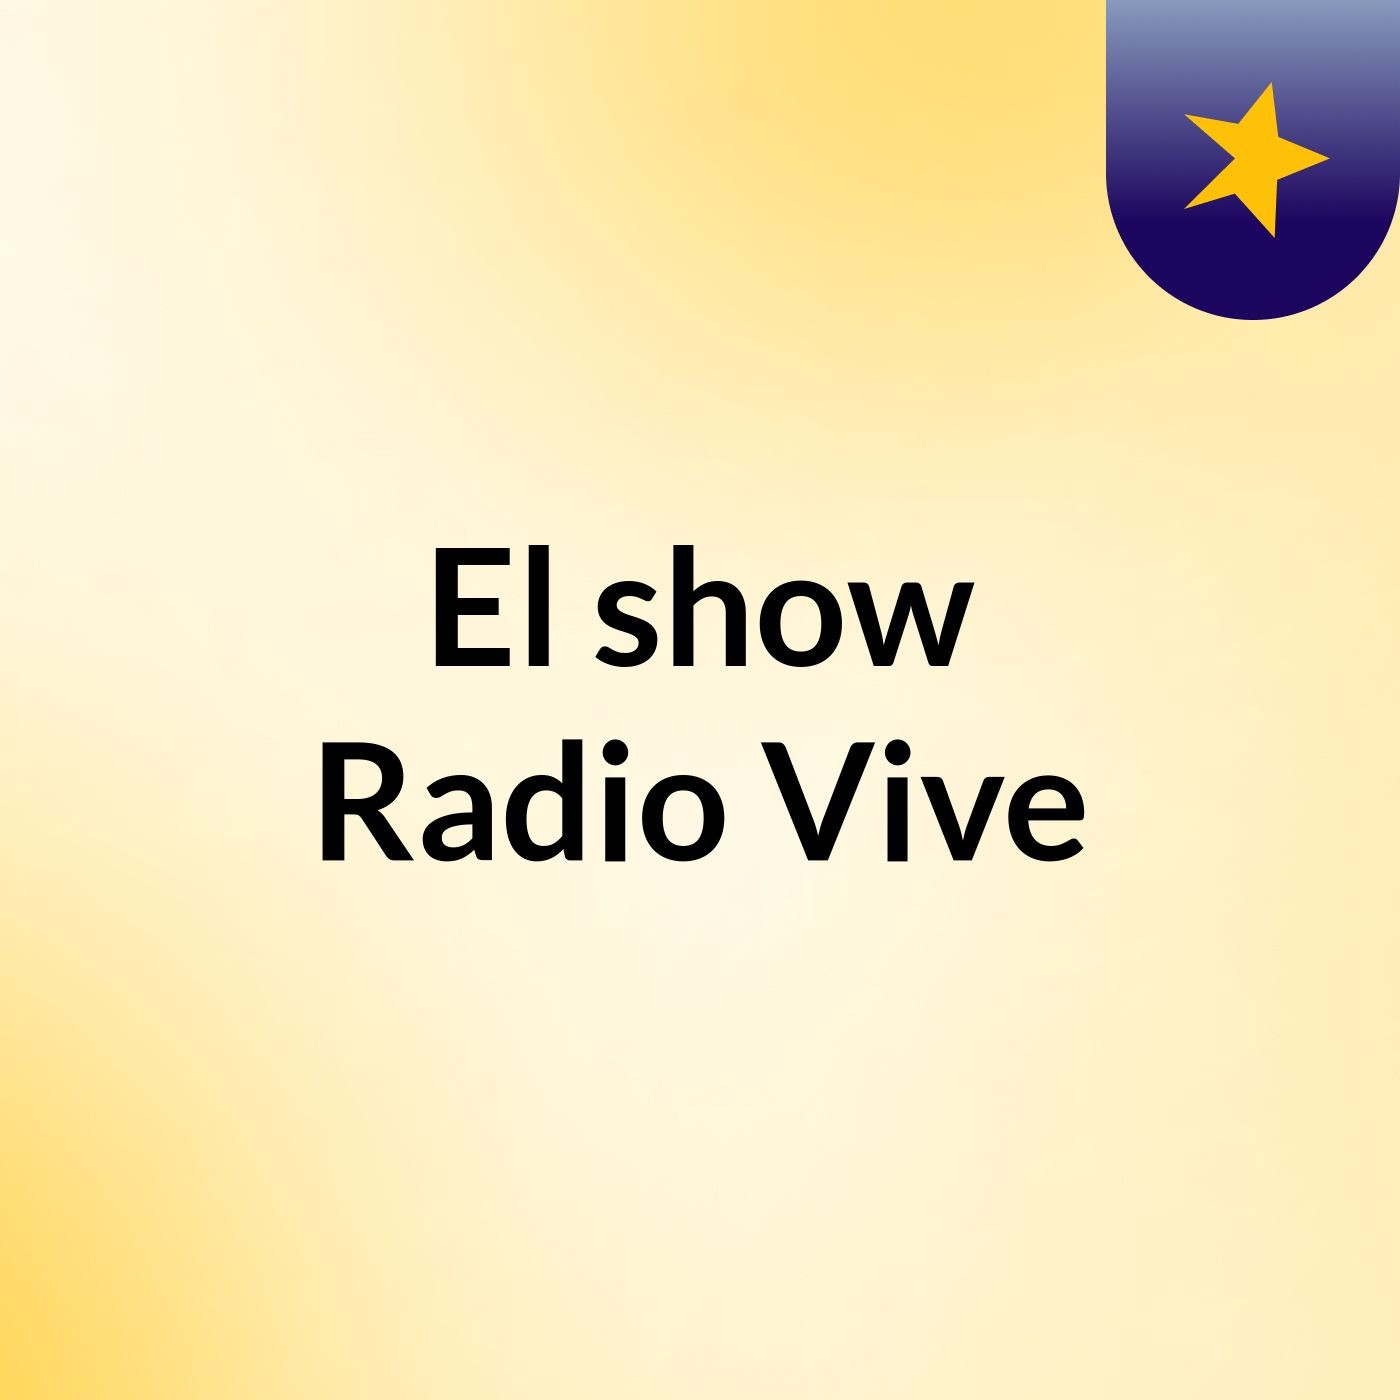 El show Radio Vive